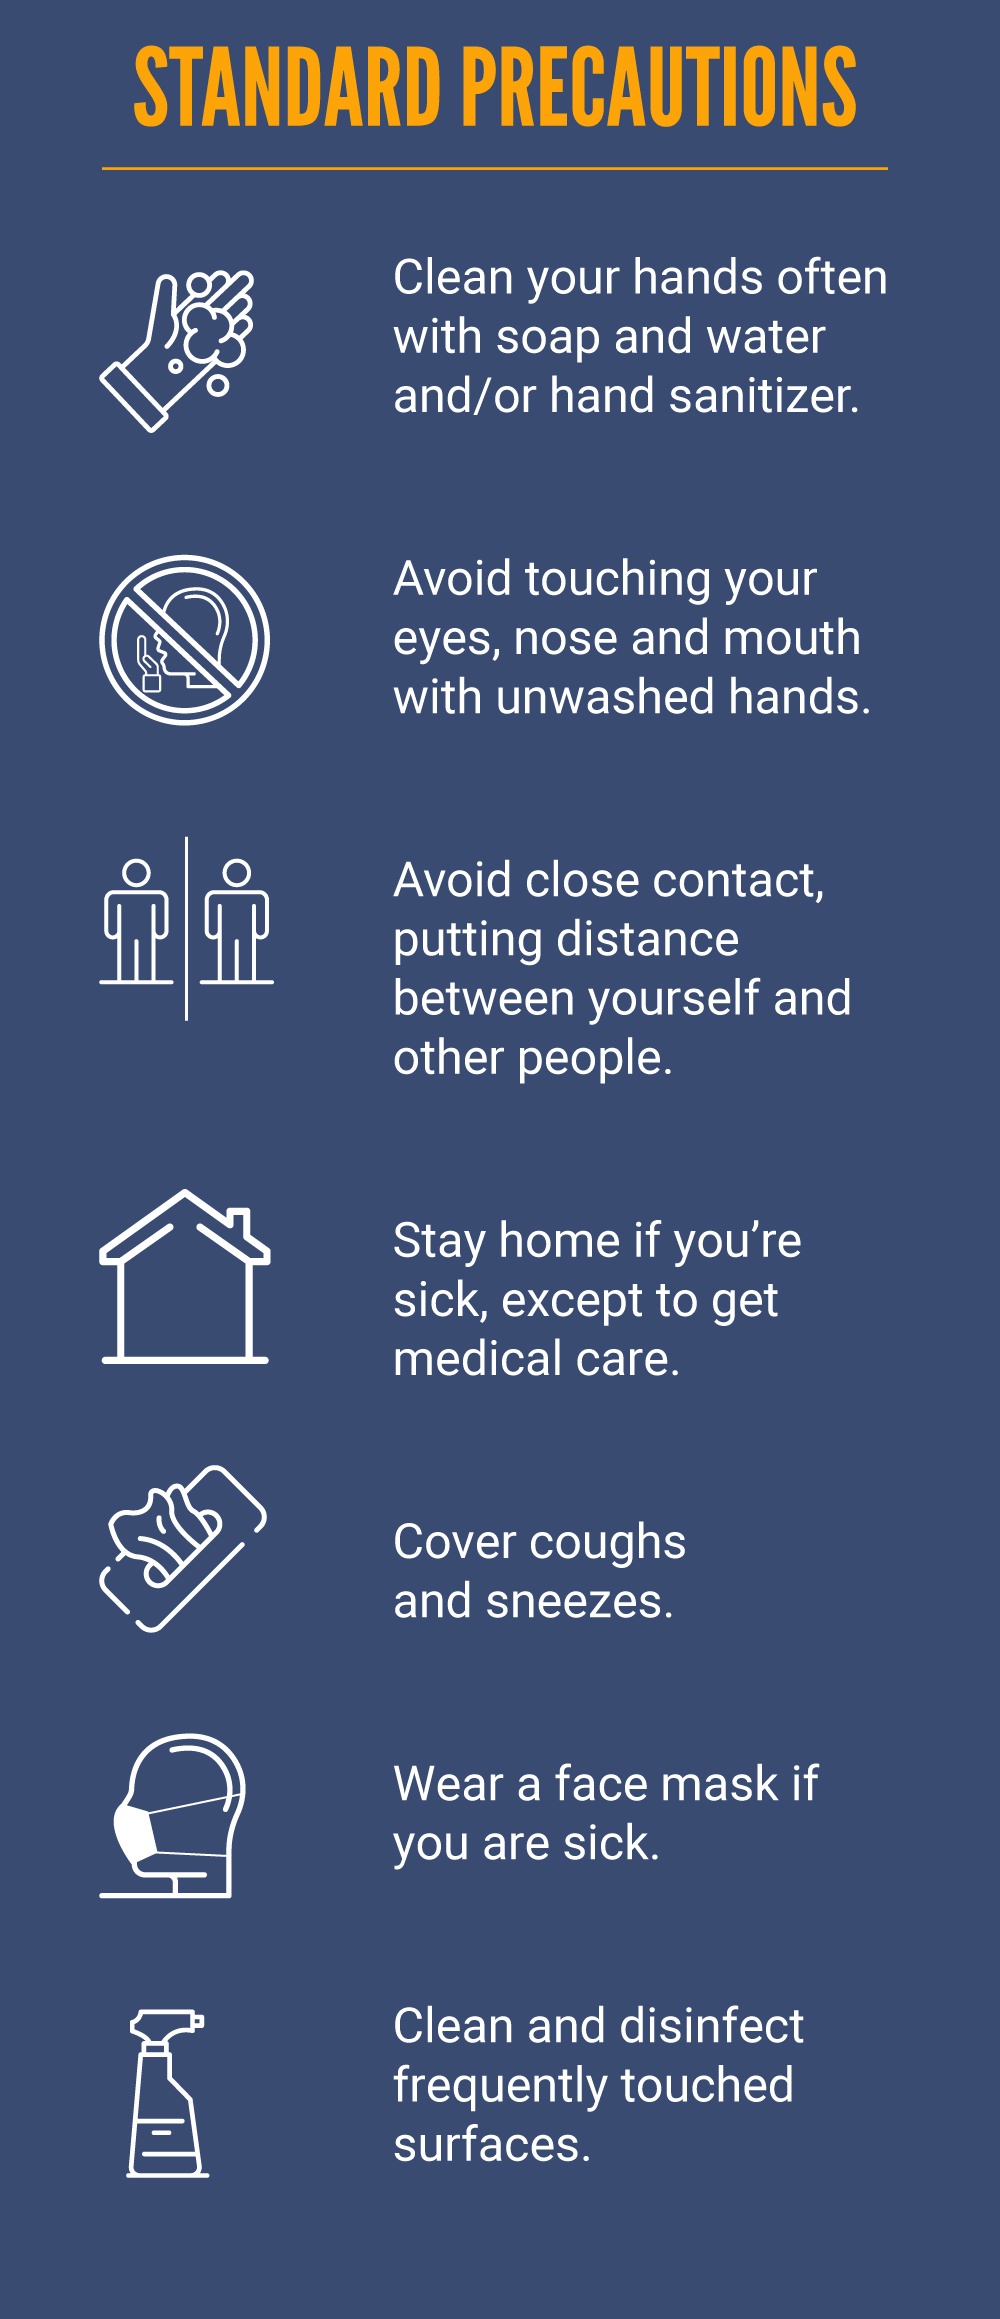 COVID-19 Standard Precautions Infographic